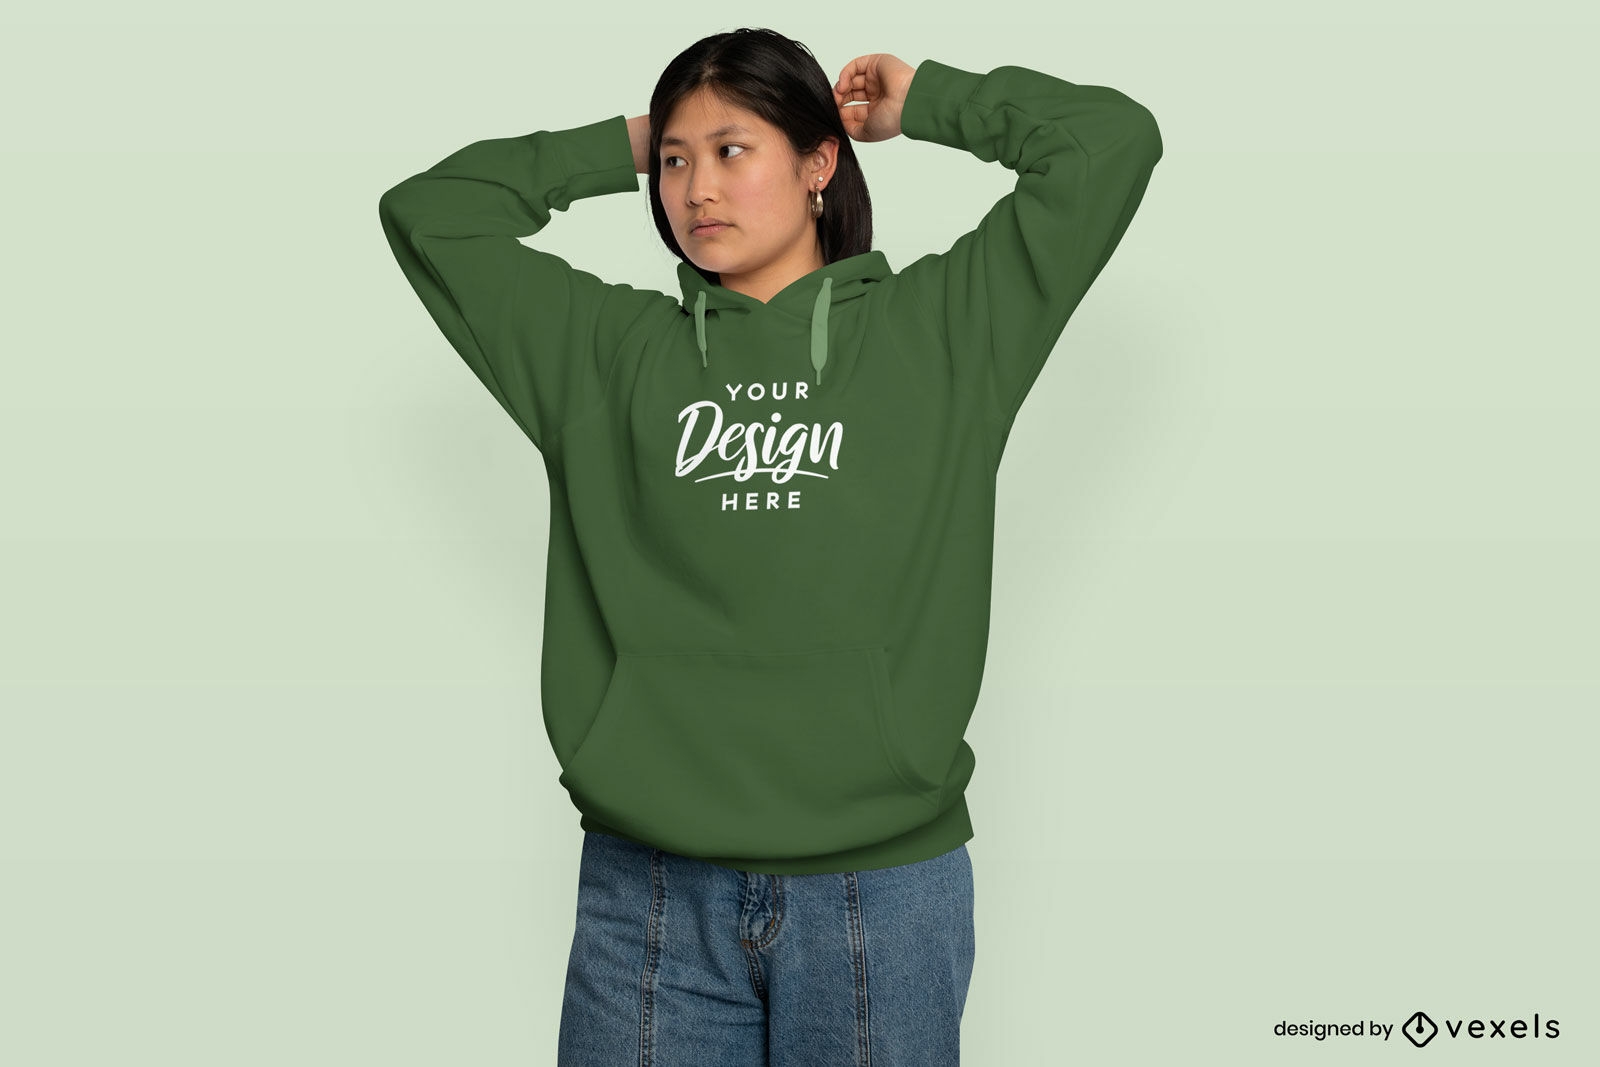 Asian woman posing in hoodie mockup